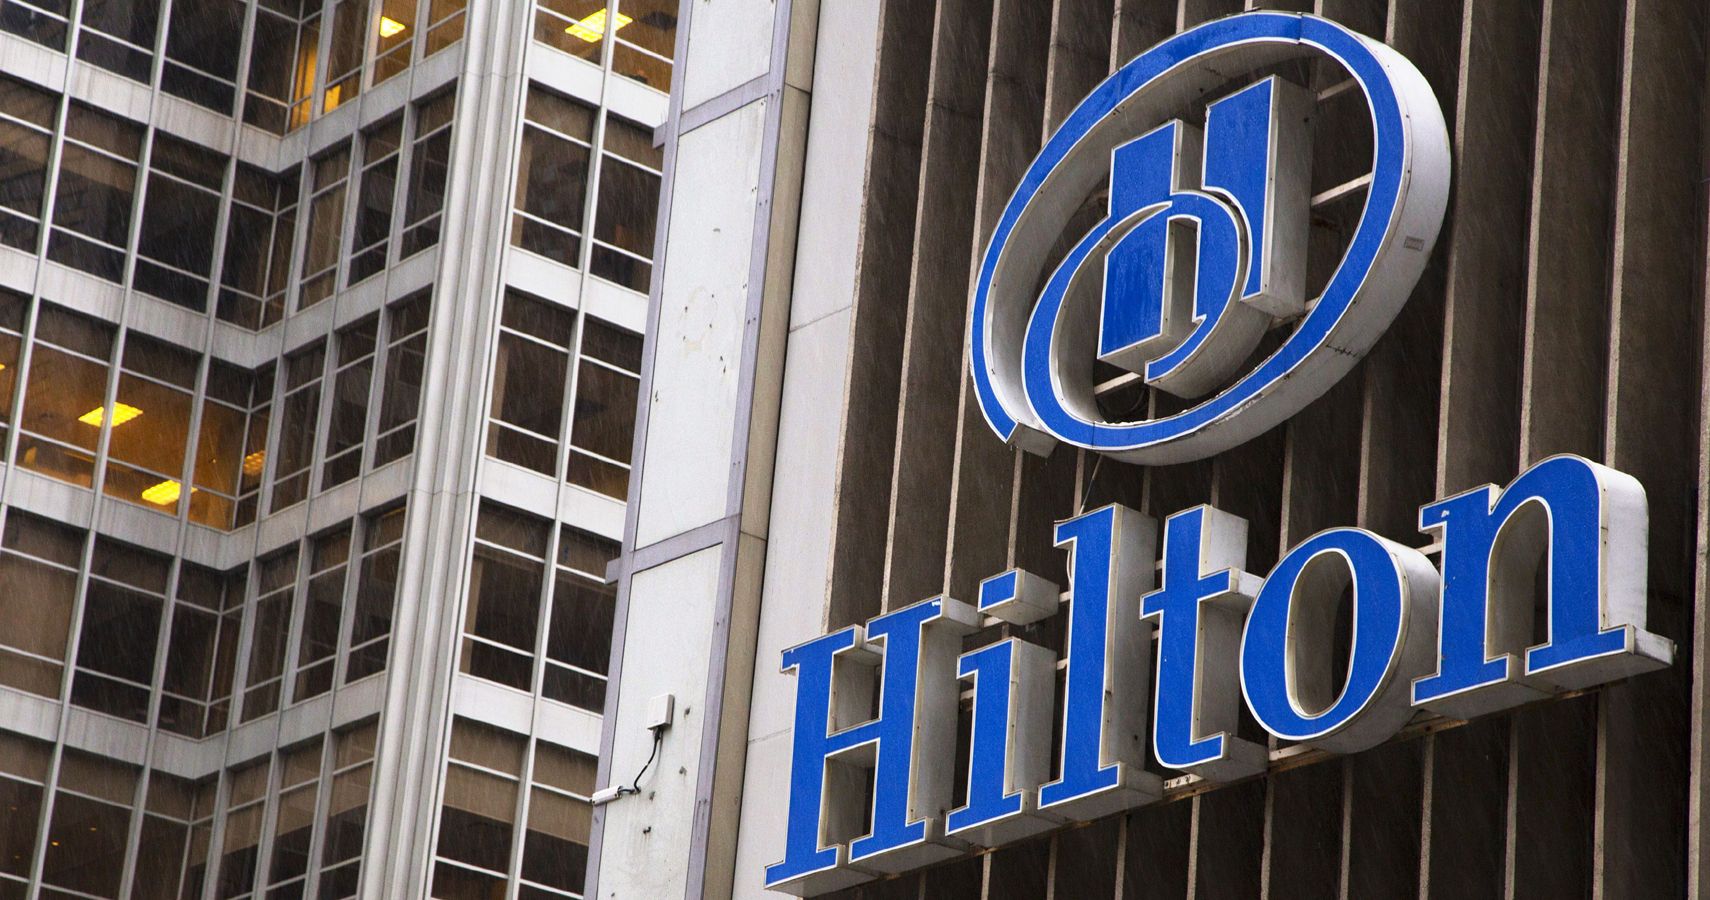 Hoteis Hilton dando um grande passo para se tornarem ecologicamente